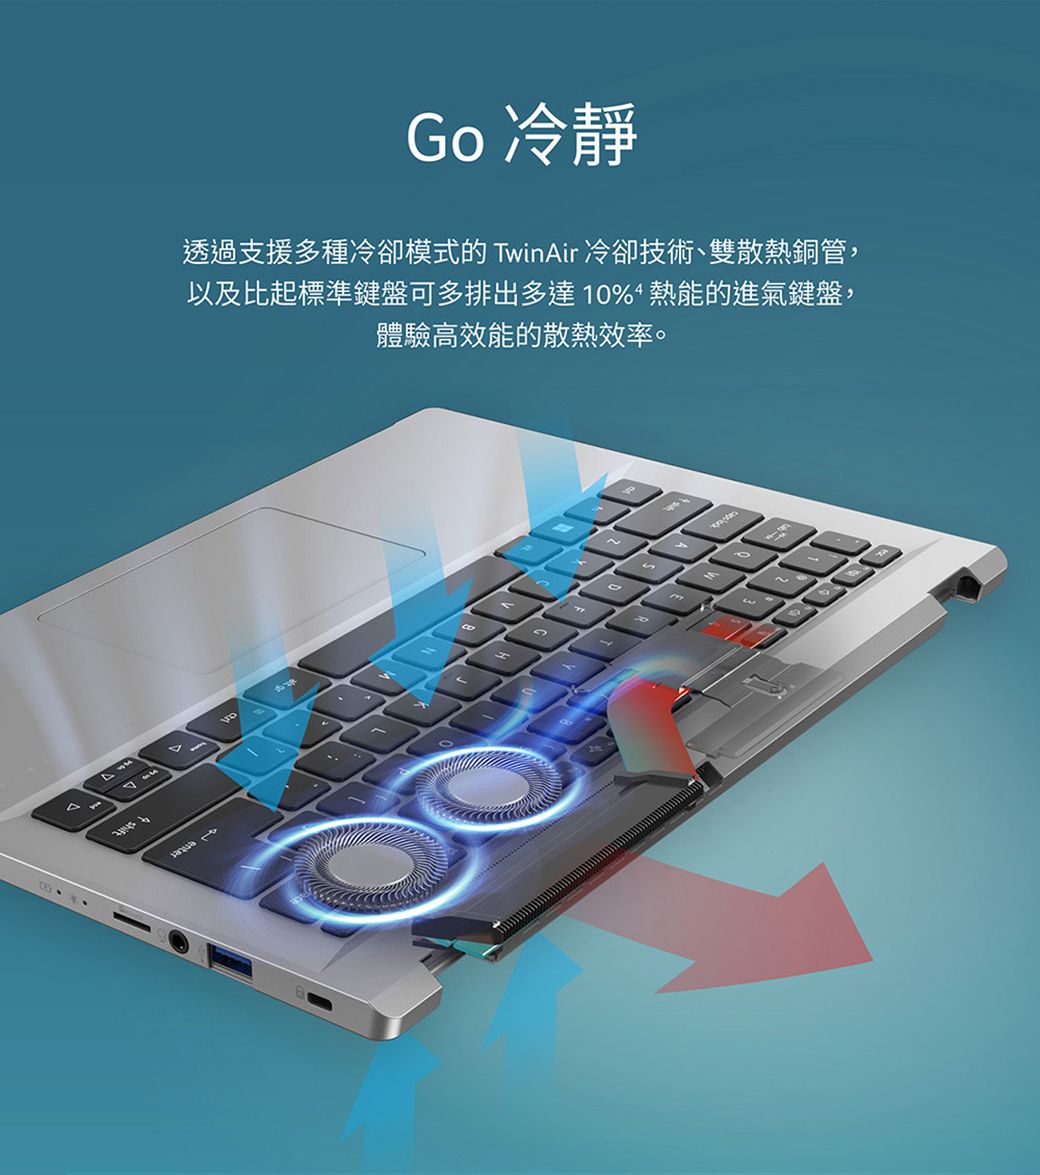 Go 冷靜透過支援多種冷卻模式的 TinAir 冷卻技術、雙散熱銅管,以及比起標準鍵盤可多排出多達10%熱能的進氣鍵盤,體驗高效能的散熱效率。4mw